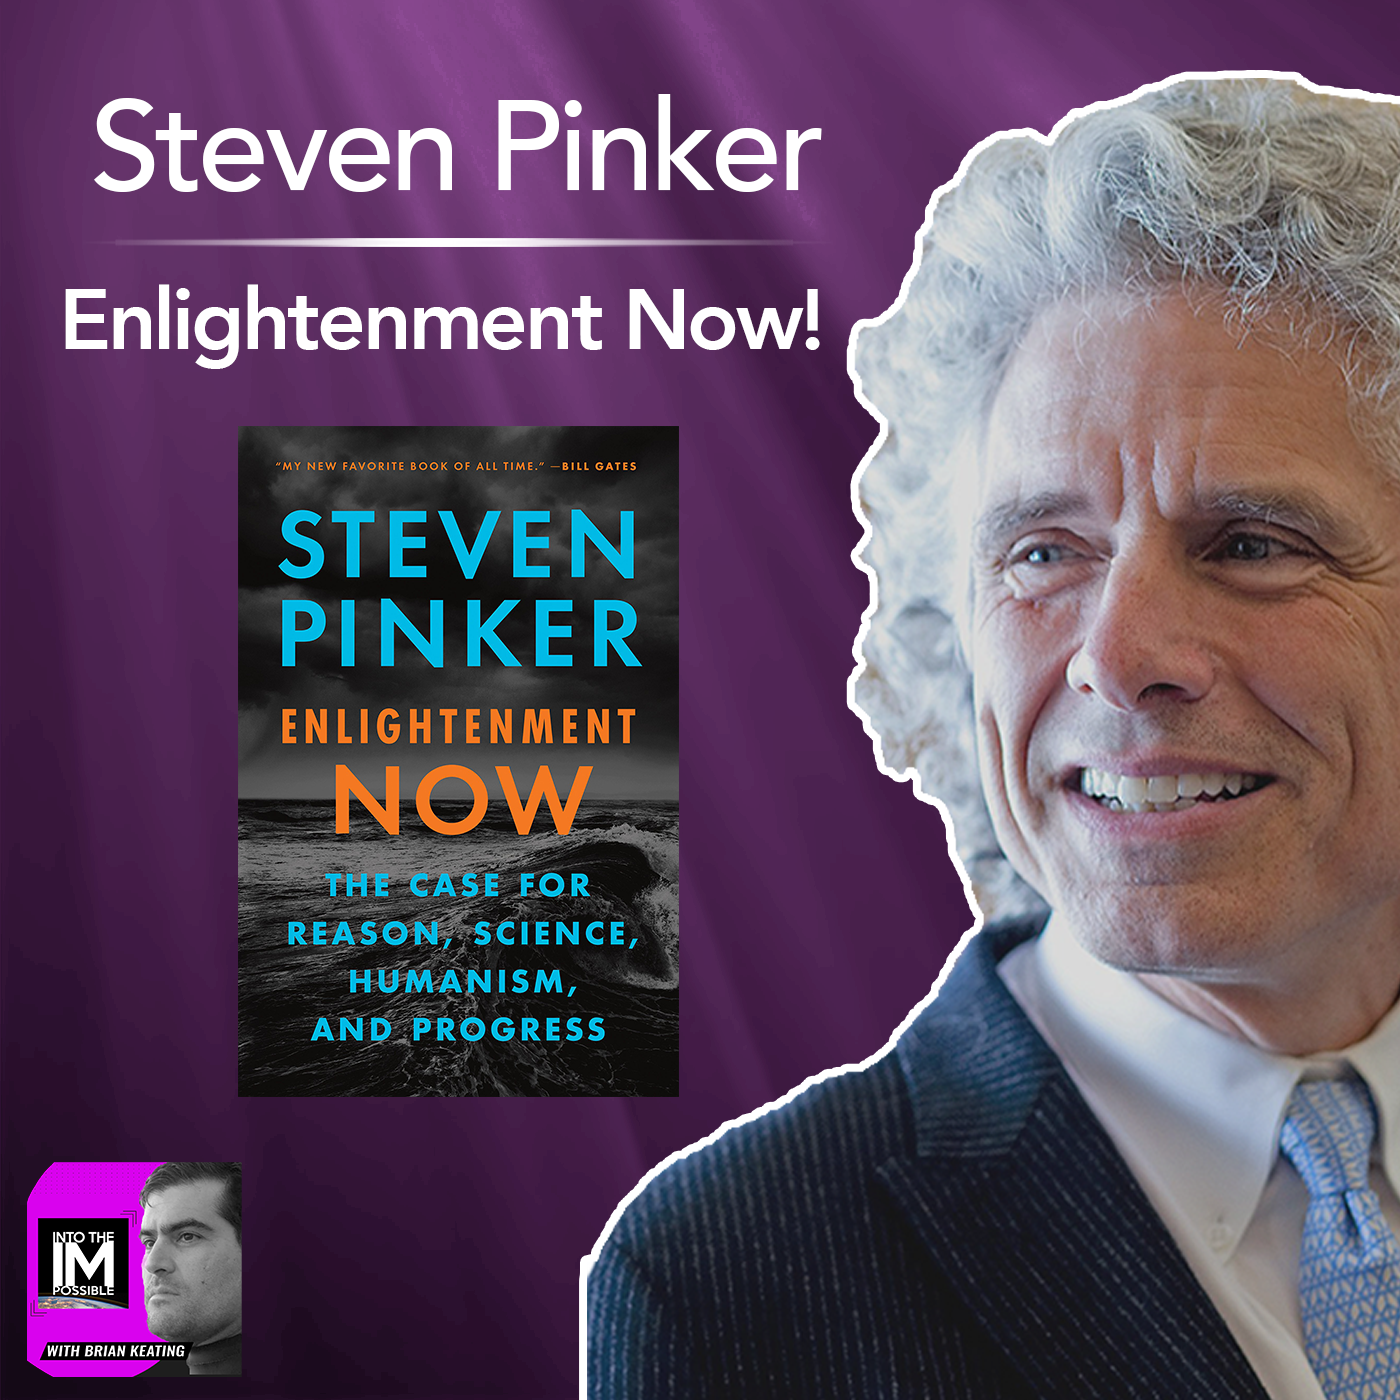 Enlightenment Now by Steven Pinker